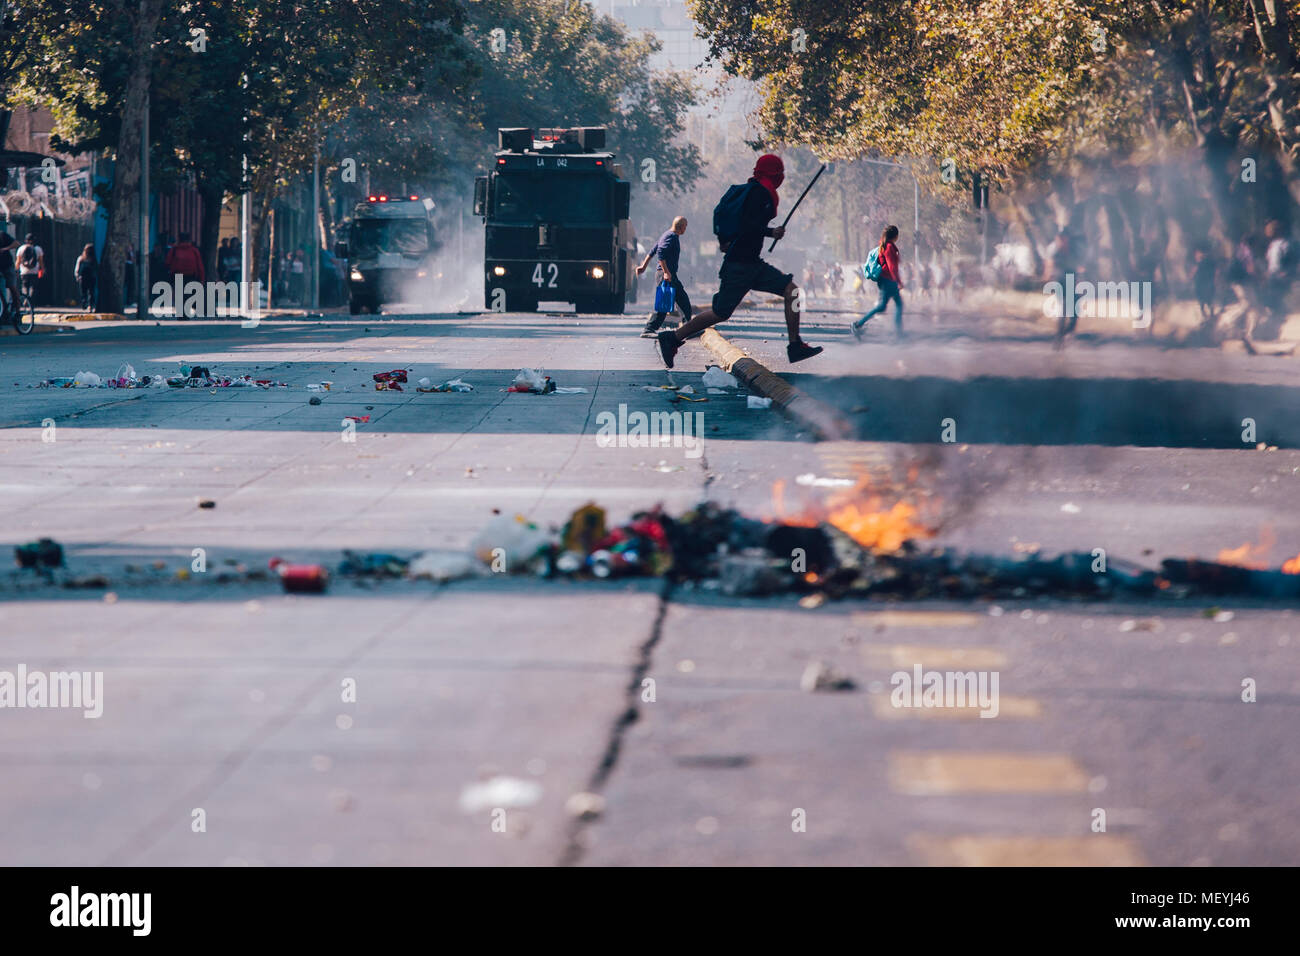 Santiago, Chile - 19. April 2018: Die barrikaden auf der Straße bei einer Demonstration forderten ein Ende der Profit in der Bildung. Stockfoto